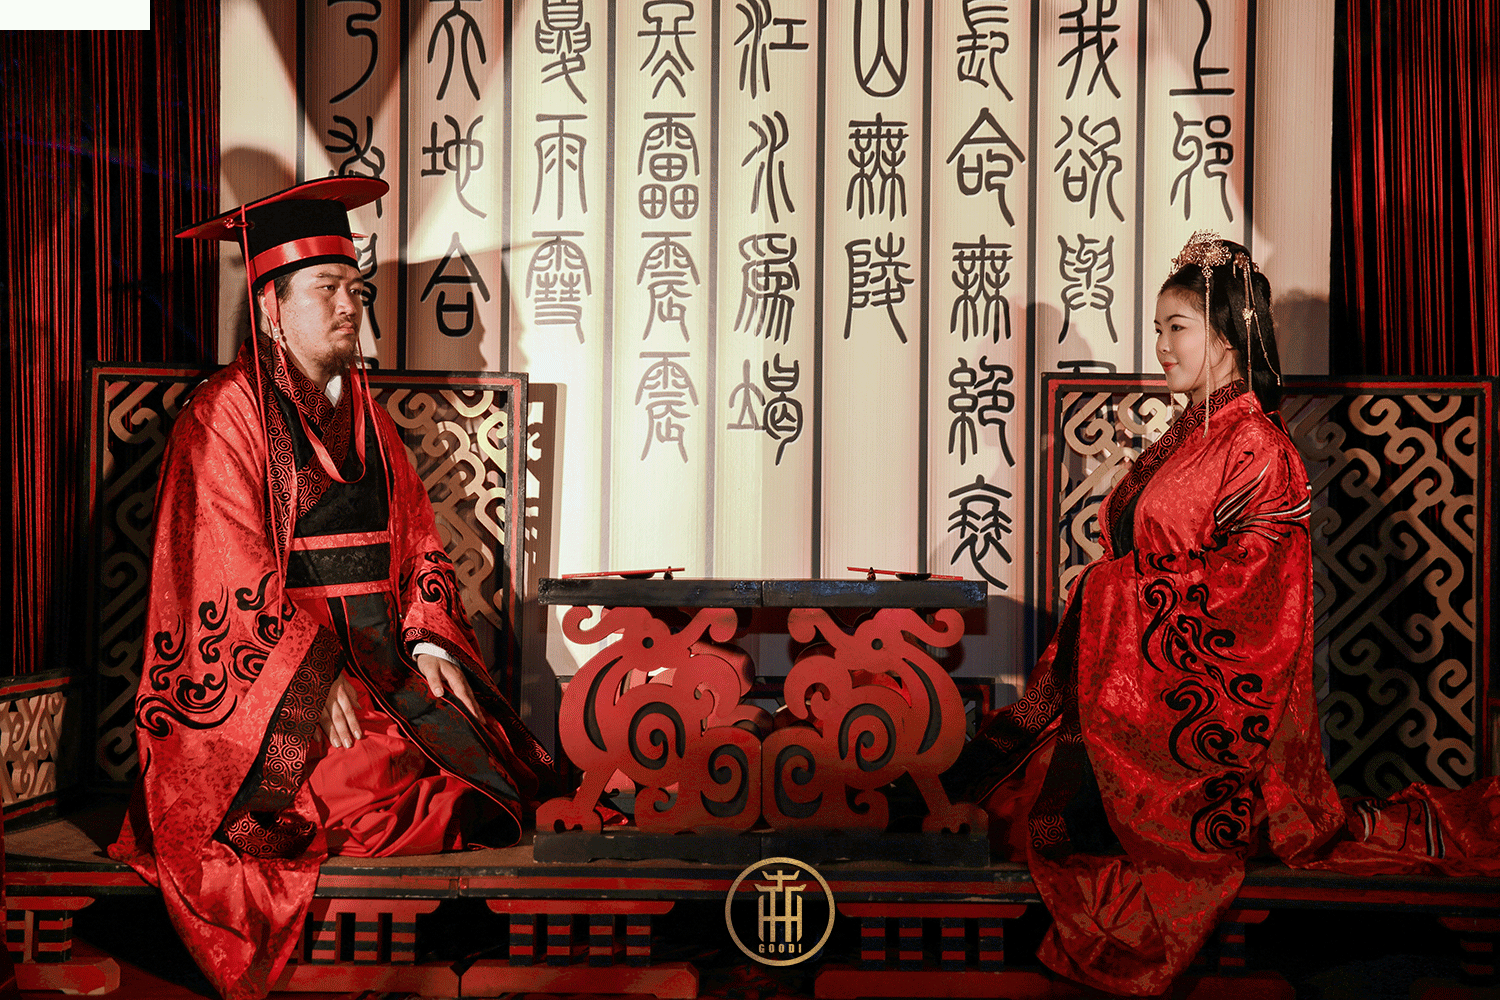 中国传统文化正当道 汉服婚礼回归本真 - 图赏 - 爱汉服